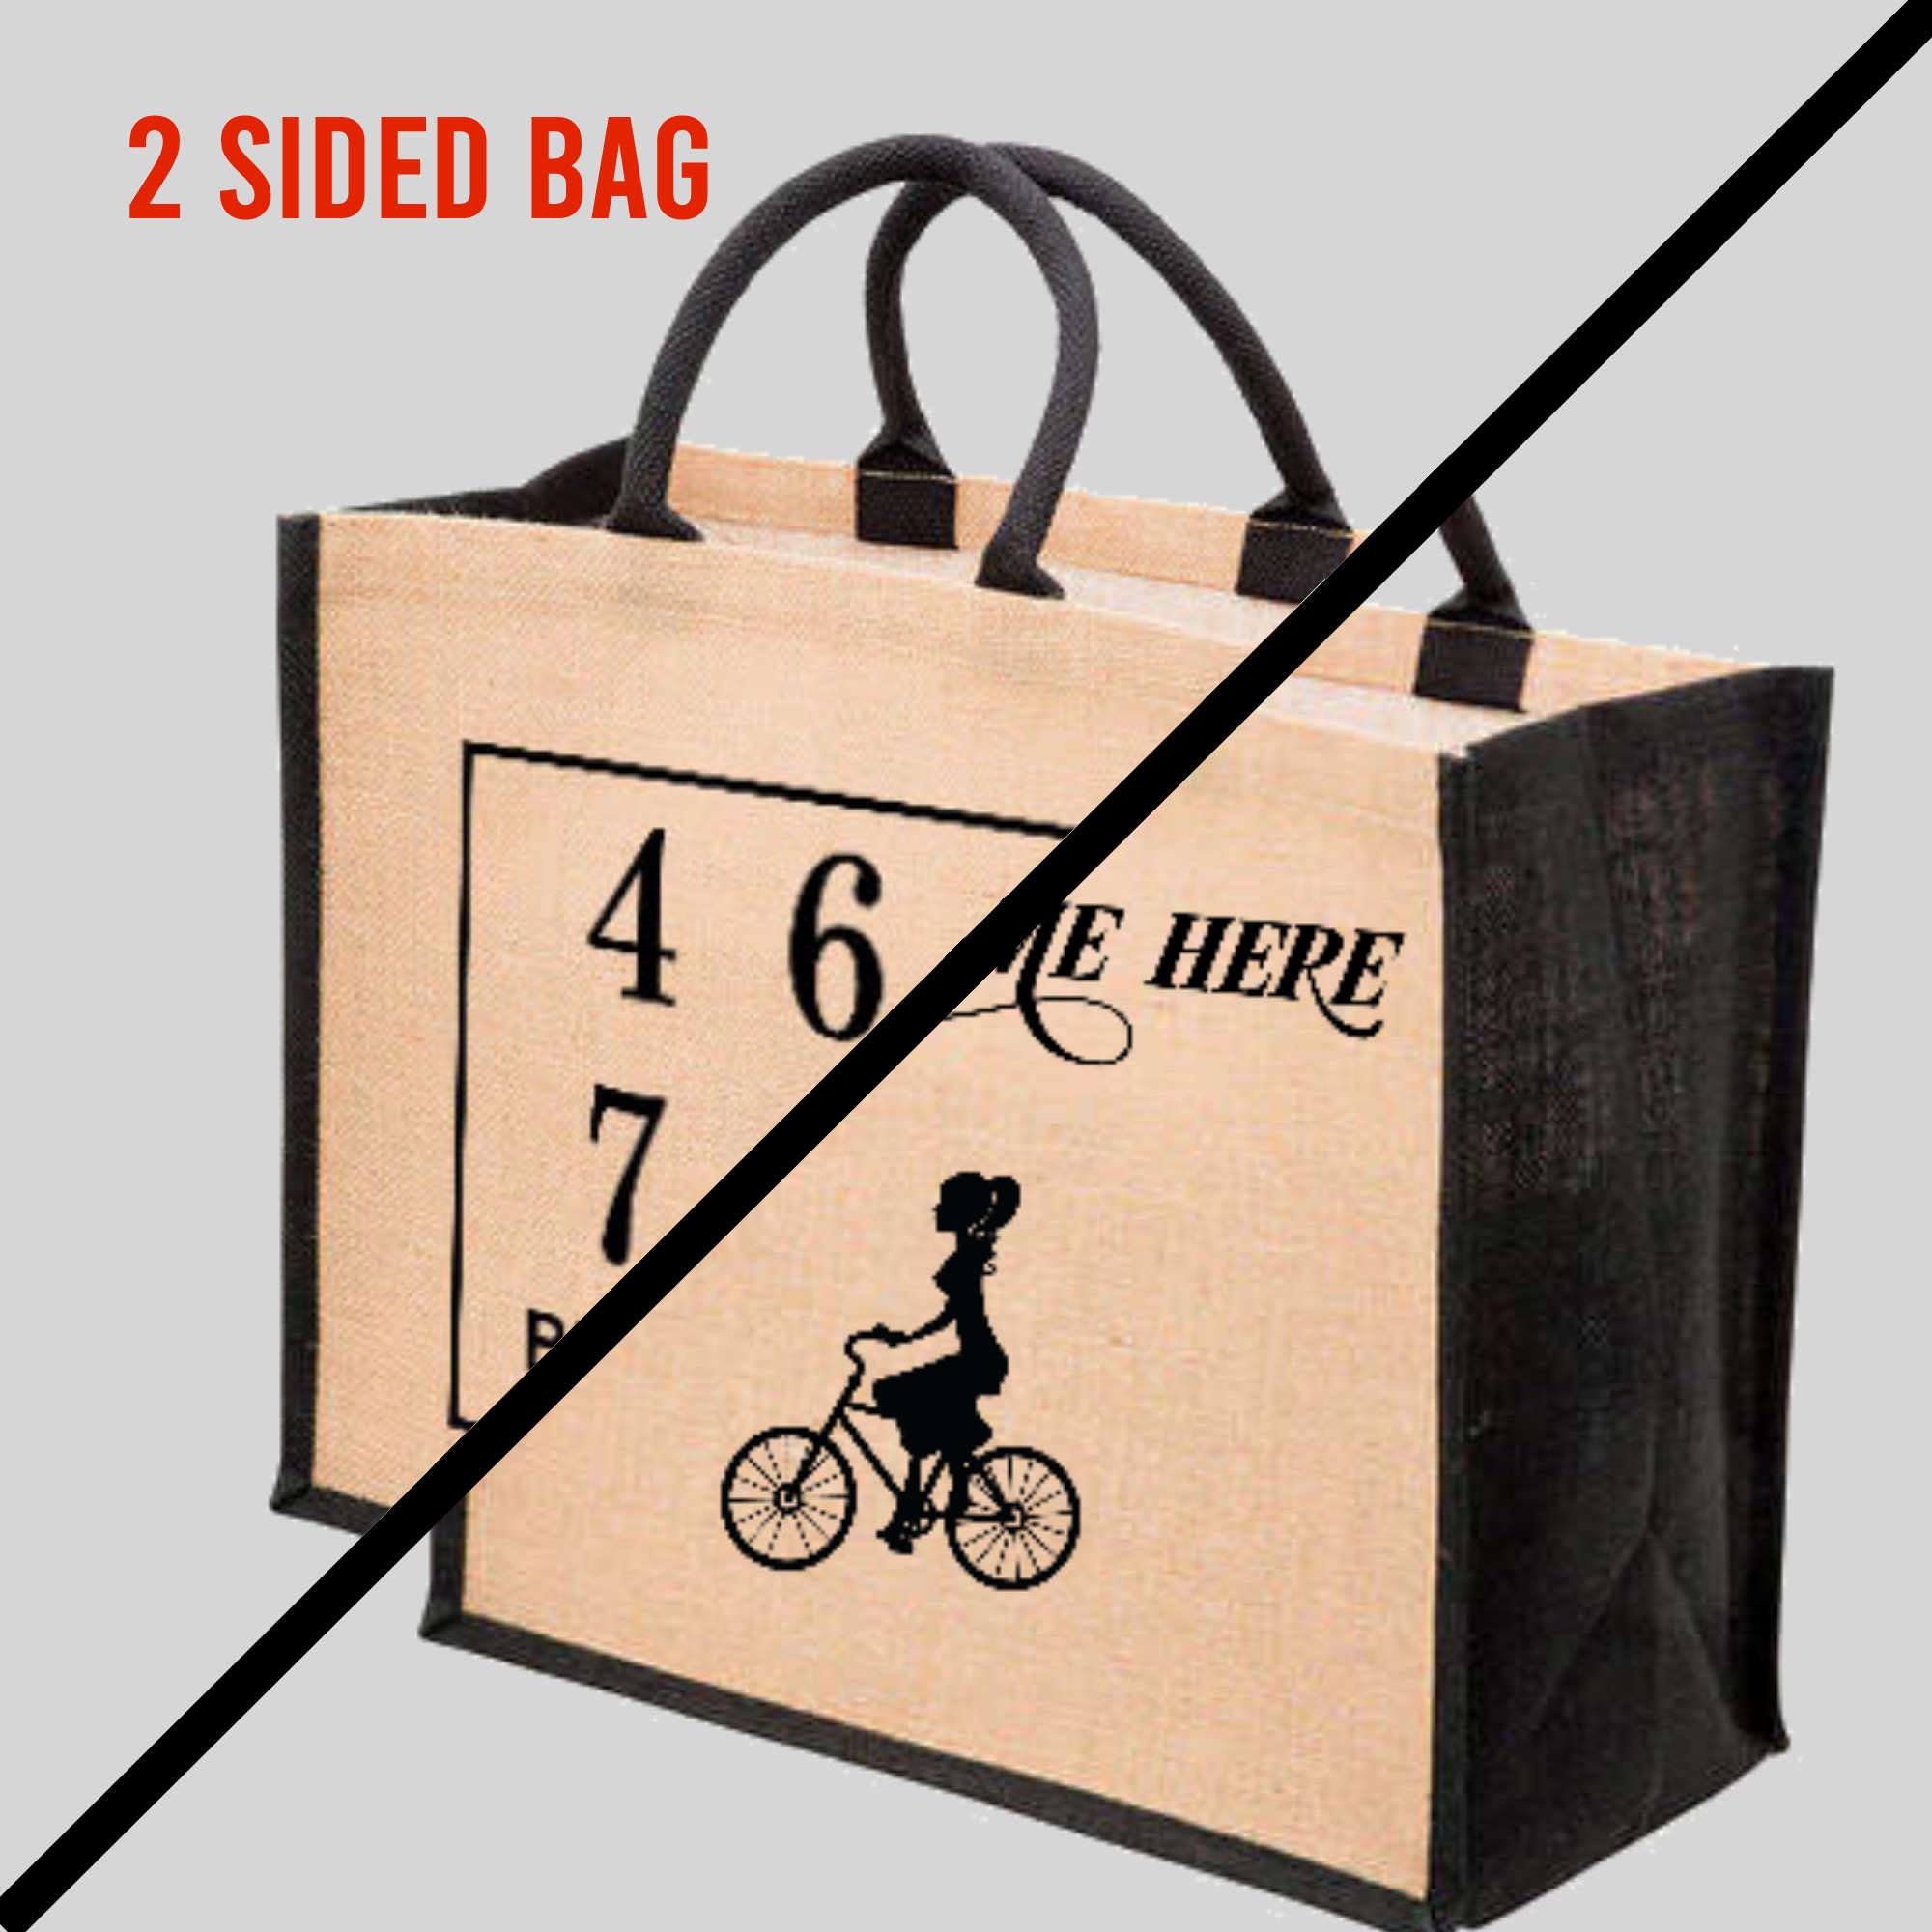 ⭐ Jute-Shopper My Other Bag 